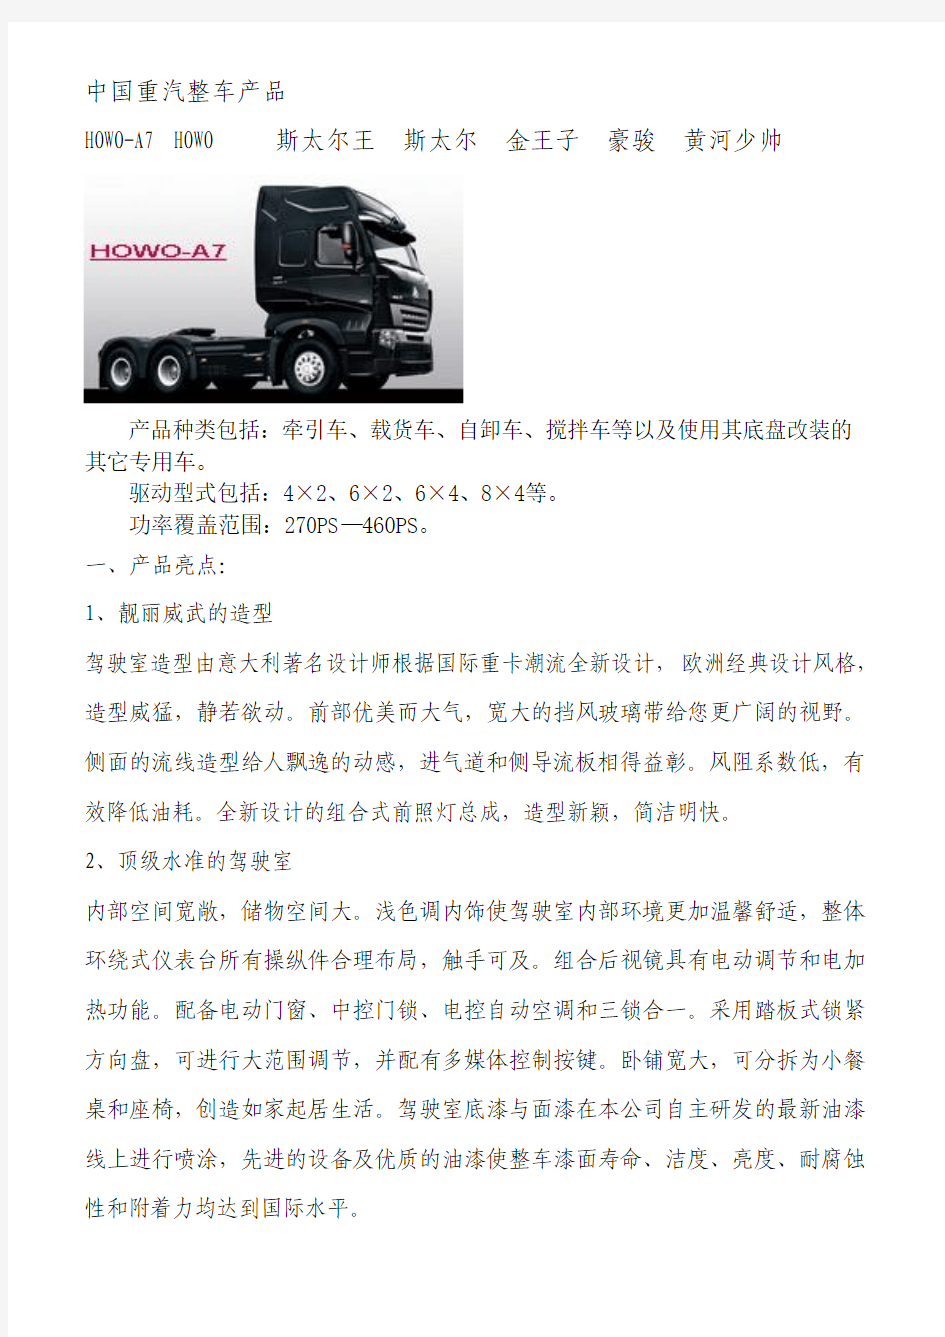 中国重汽整车产品